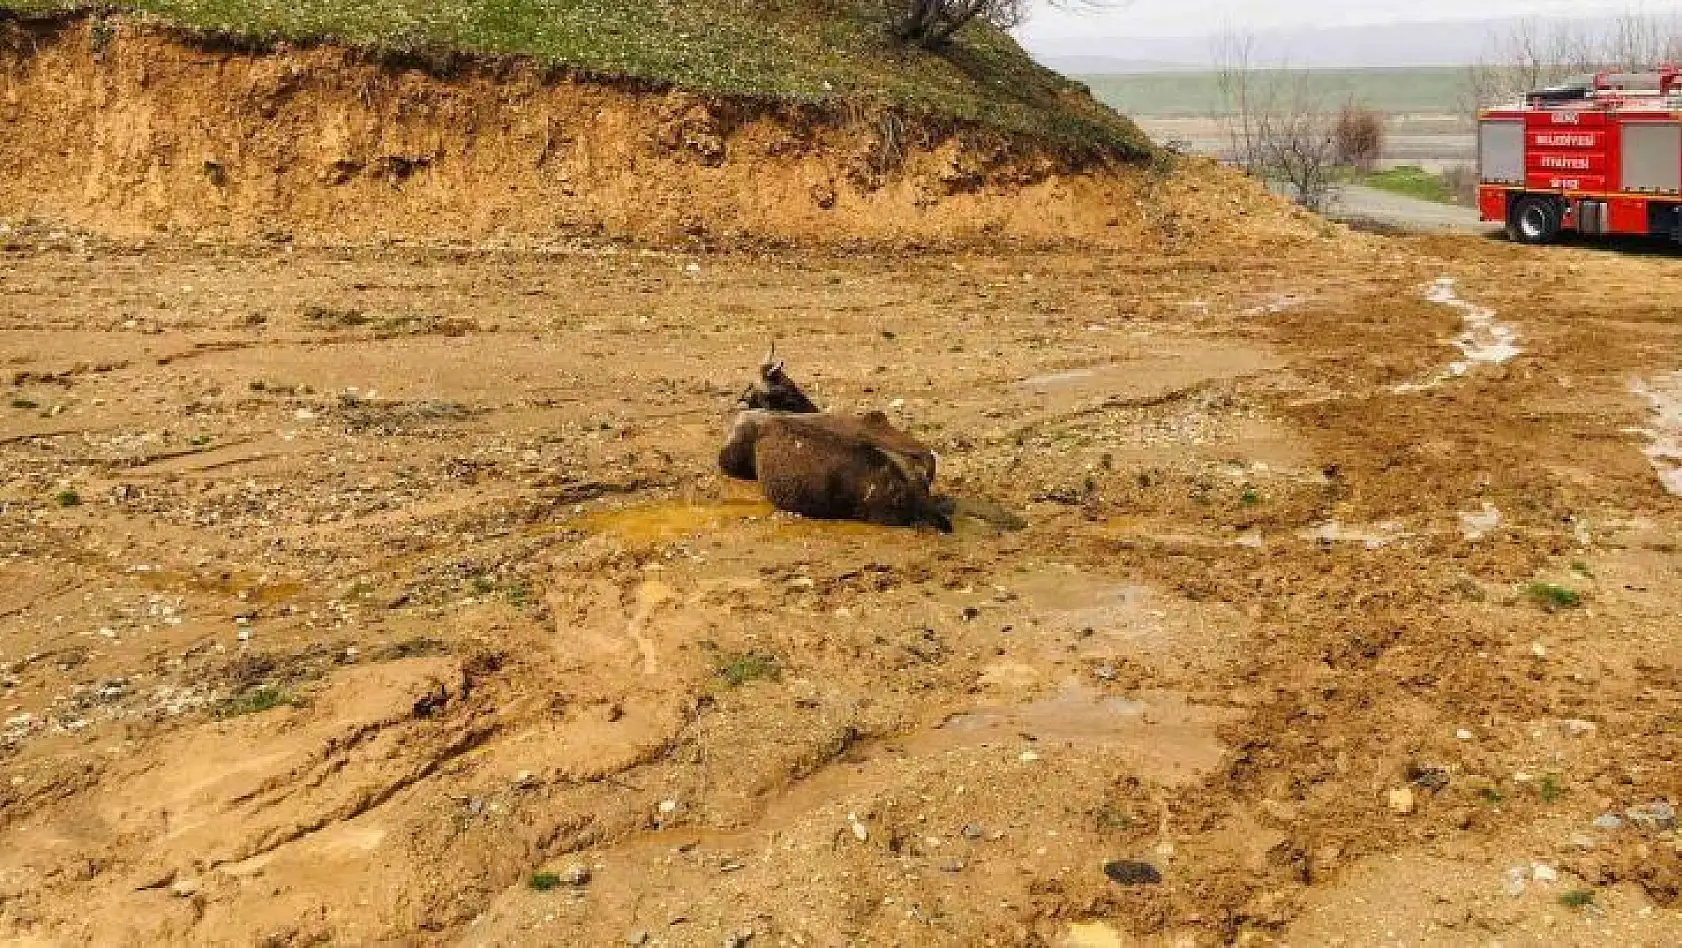 Bingöl'de çamura saplanan inek kurtarıldı